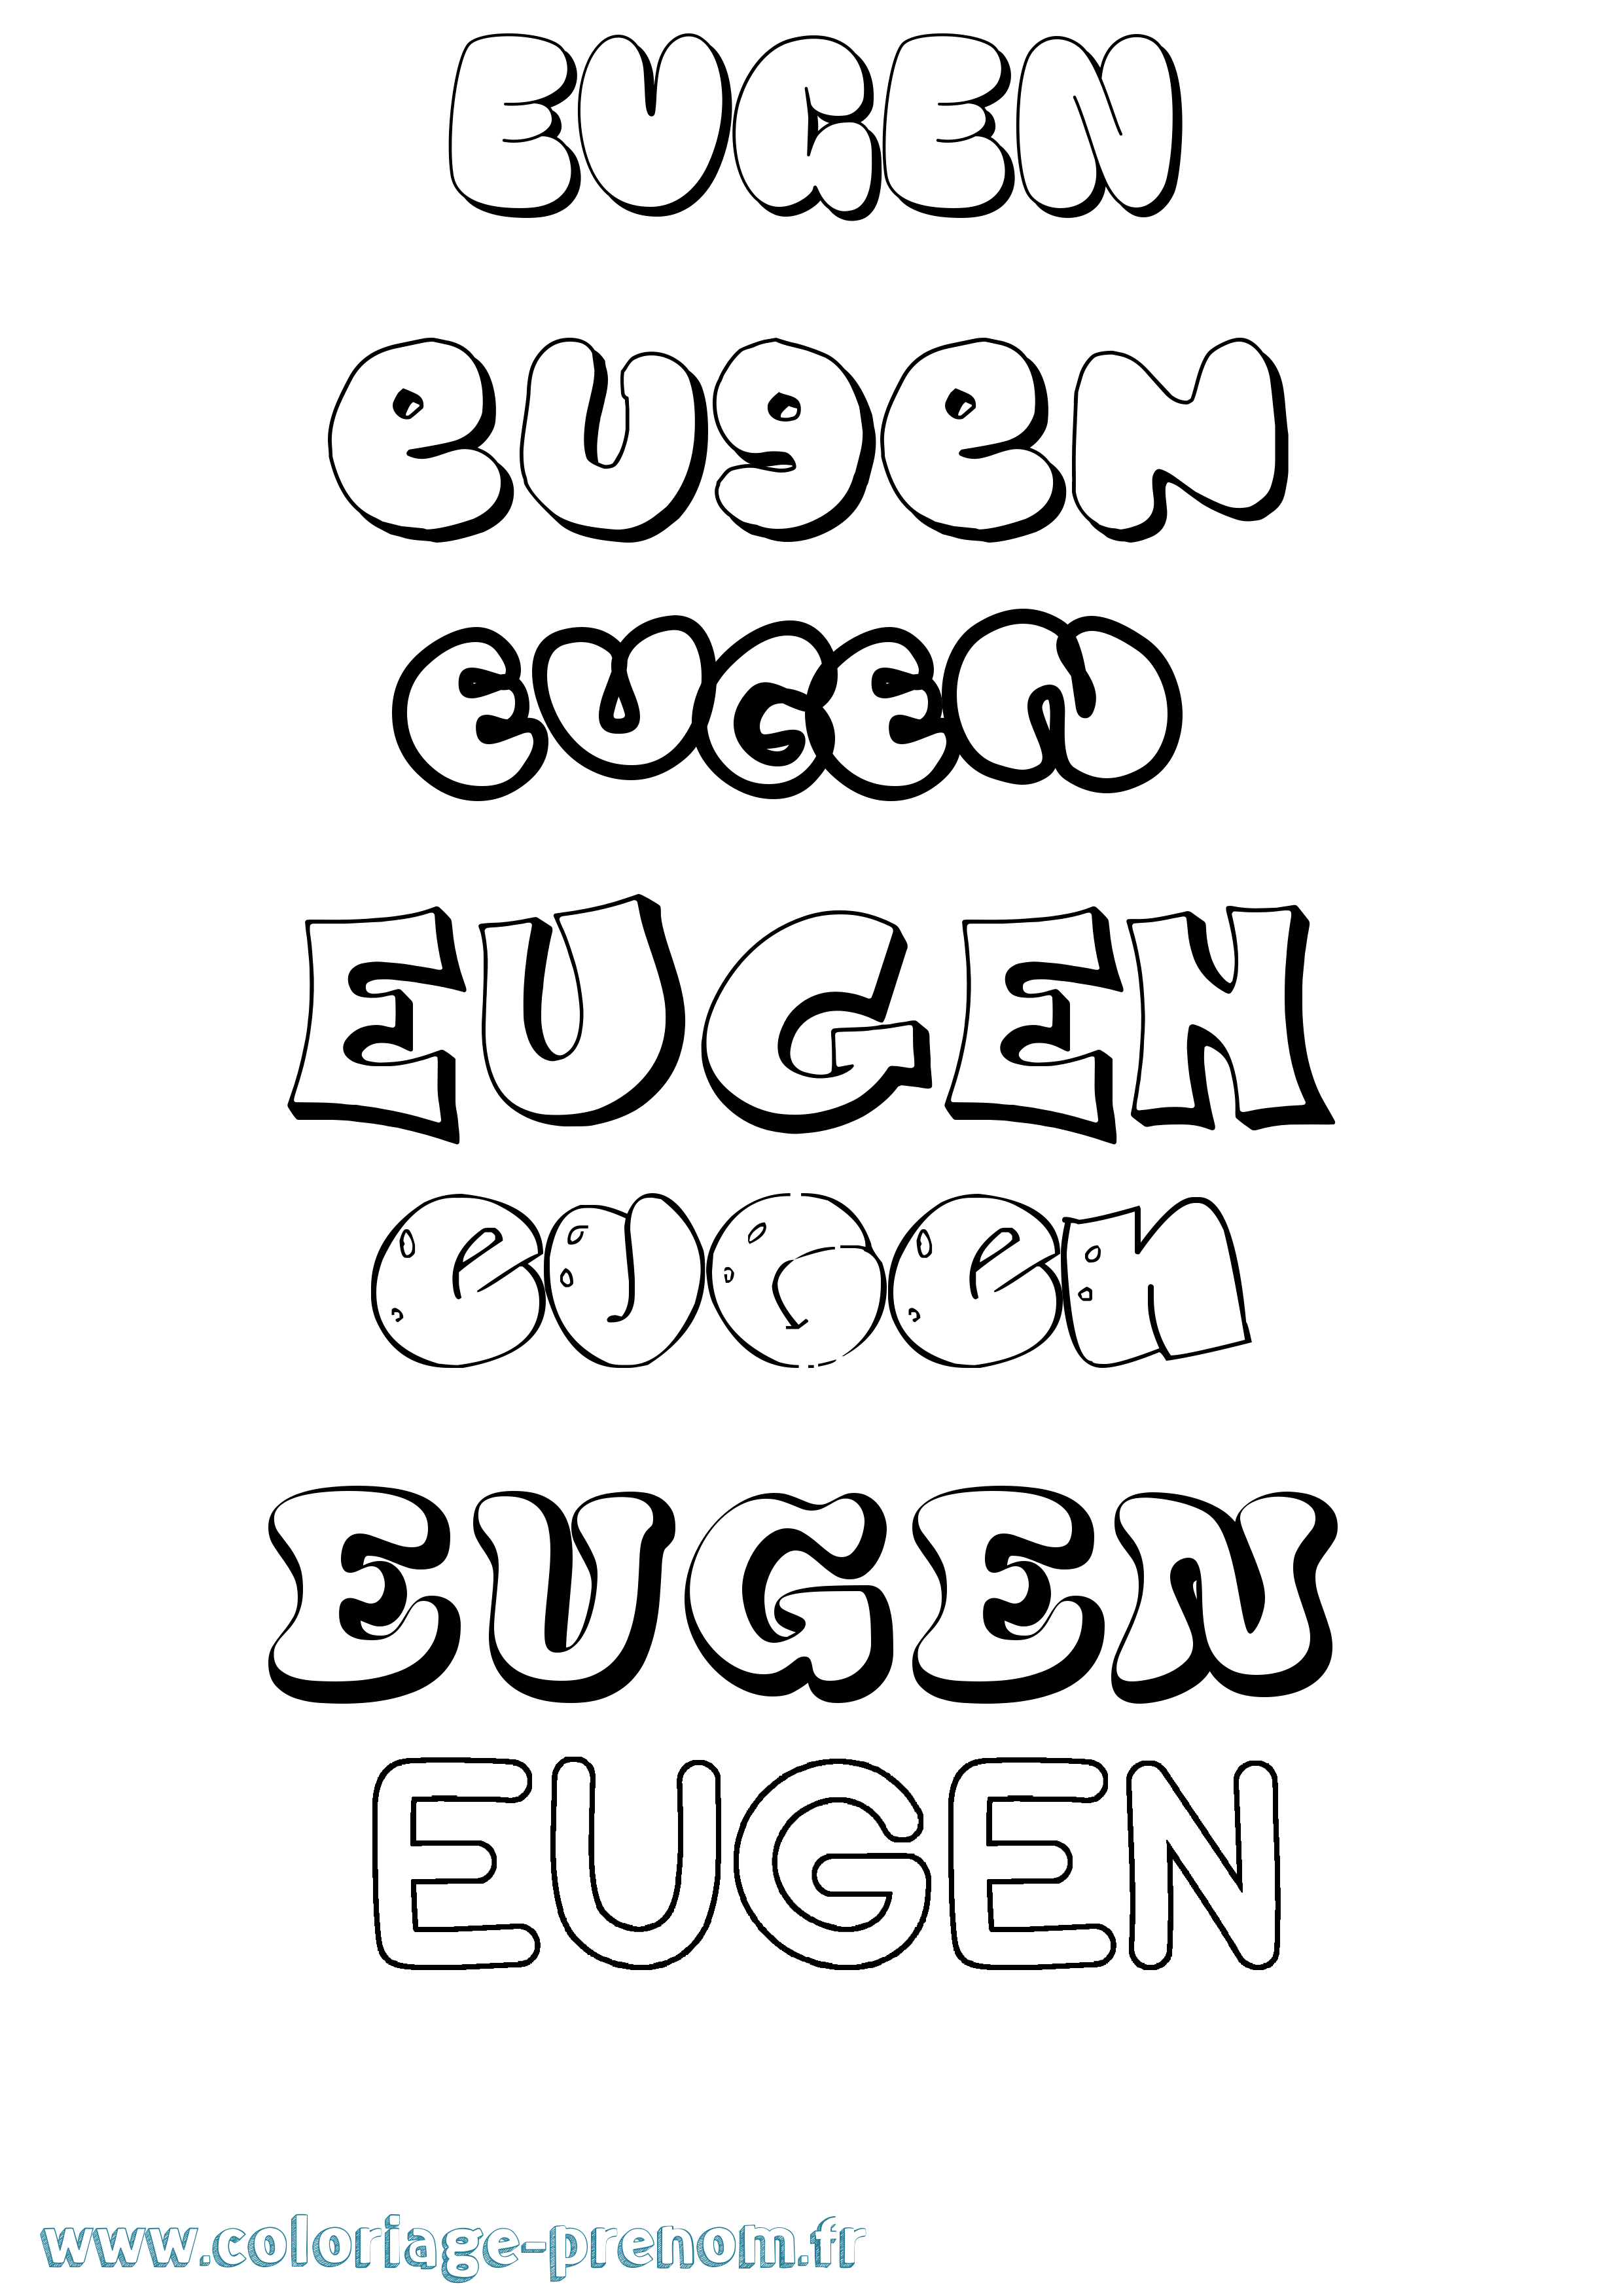 Coloriage prénom Eugen Bubble